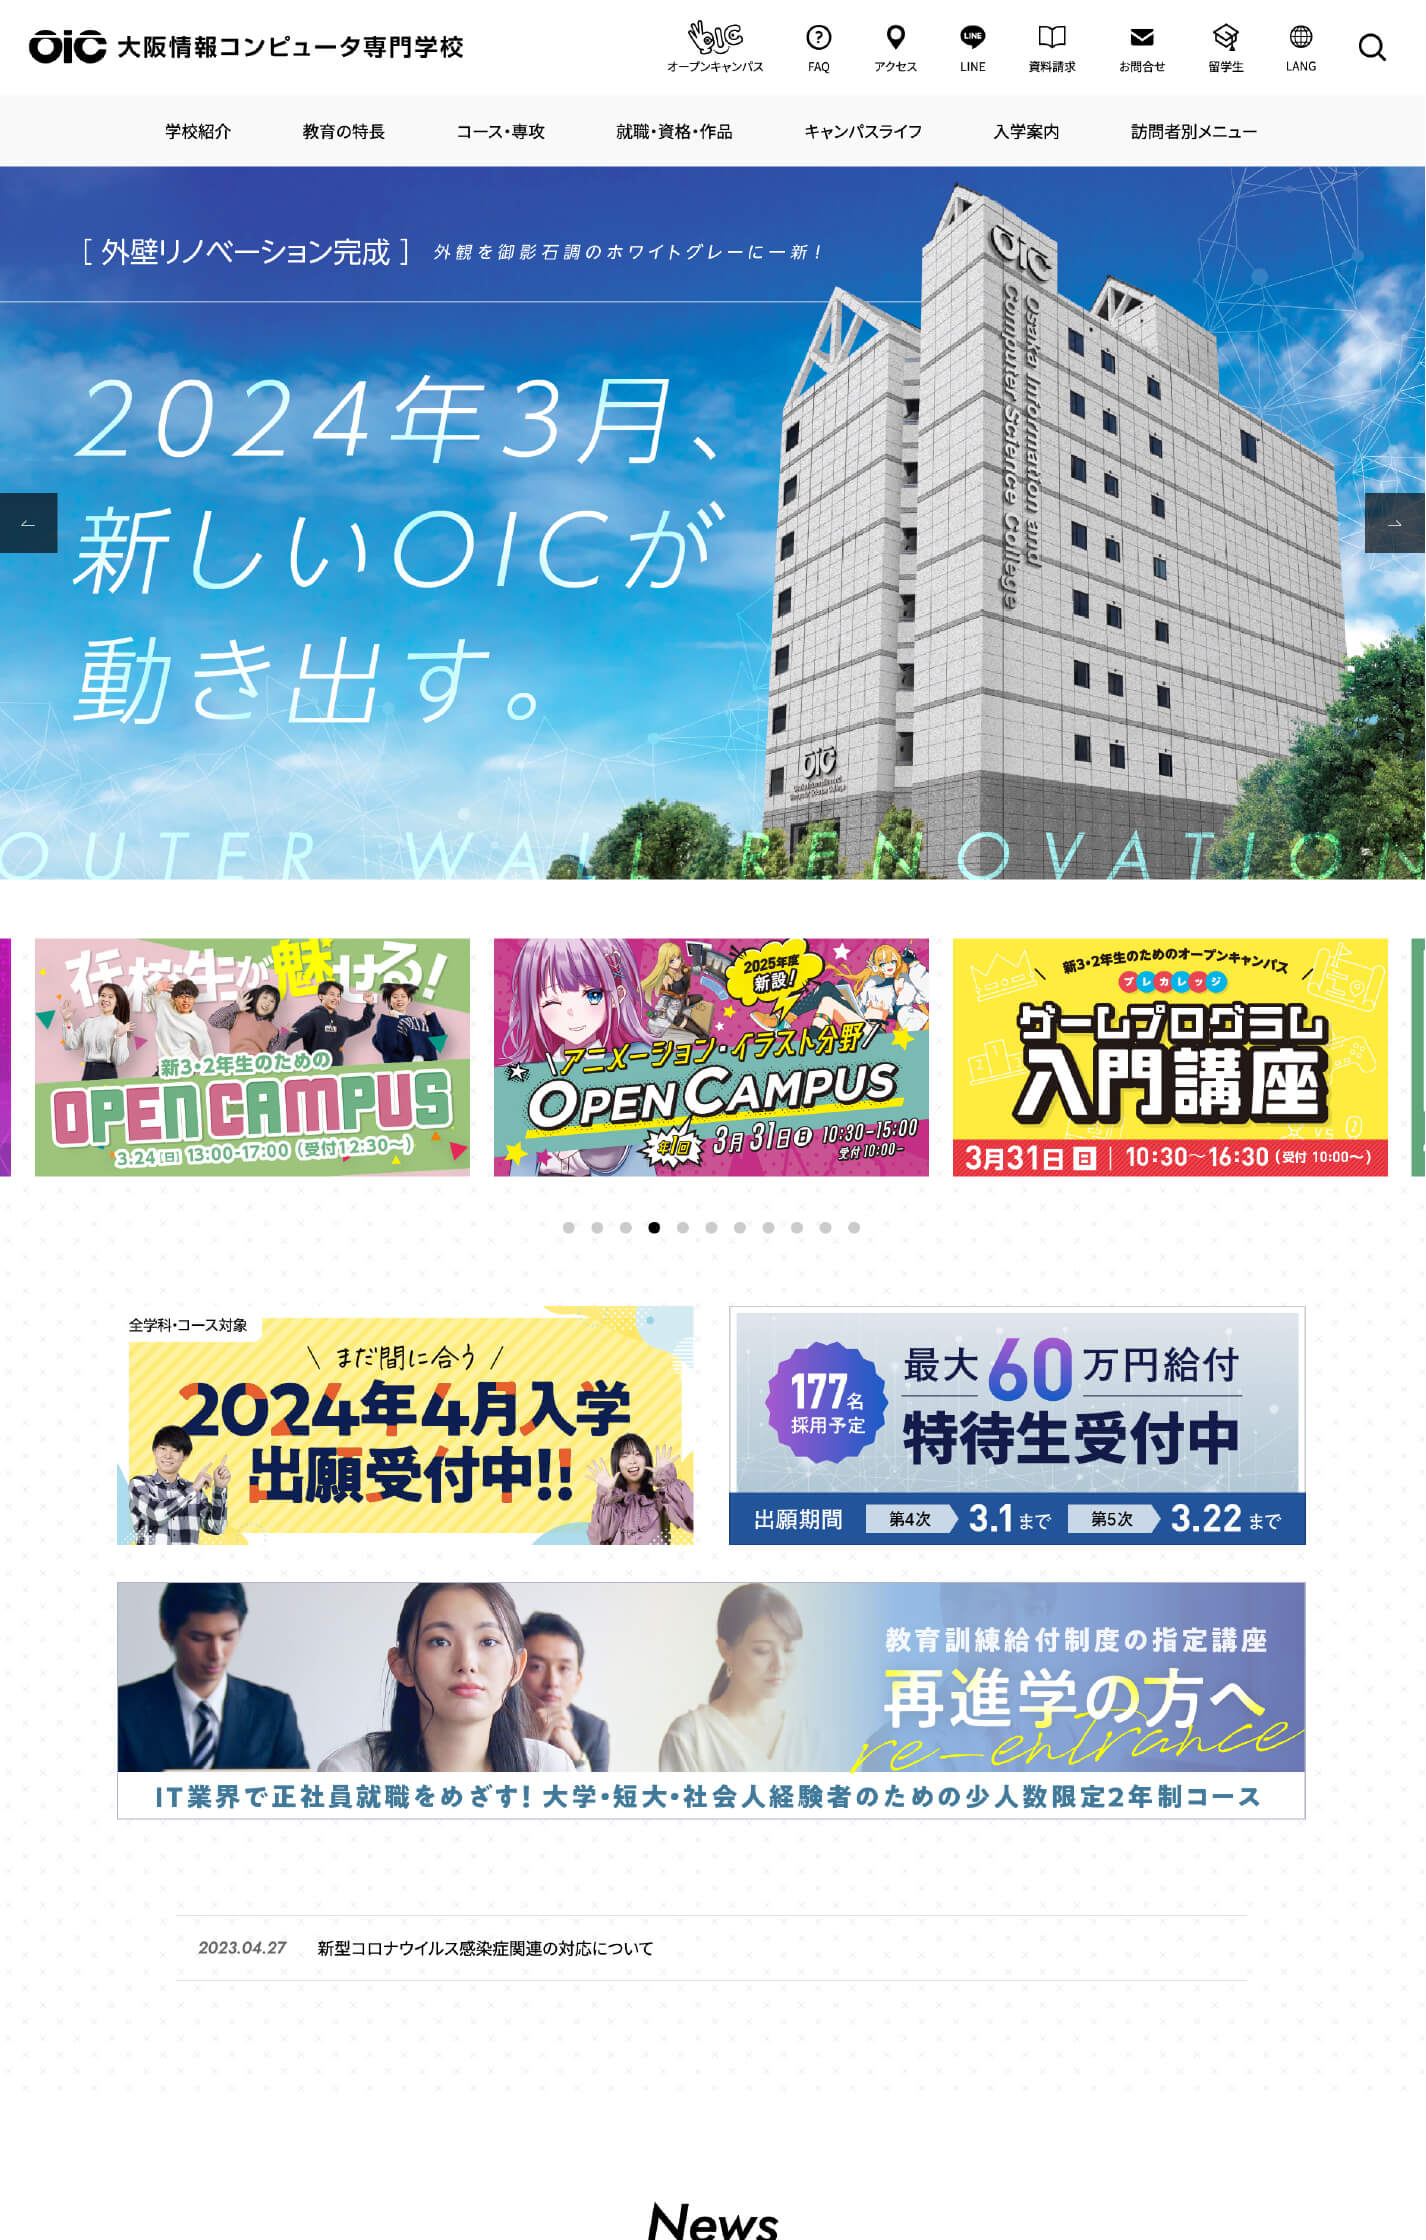 大阪情報コンピュータ専門学校 公式サイト